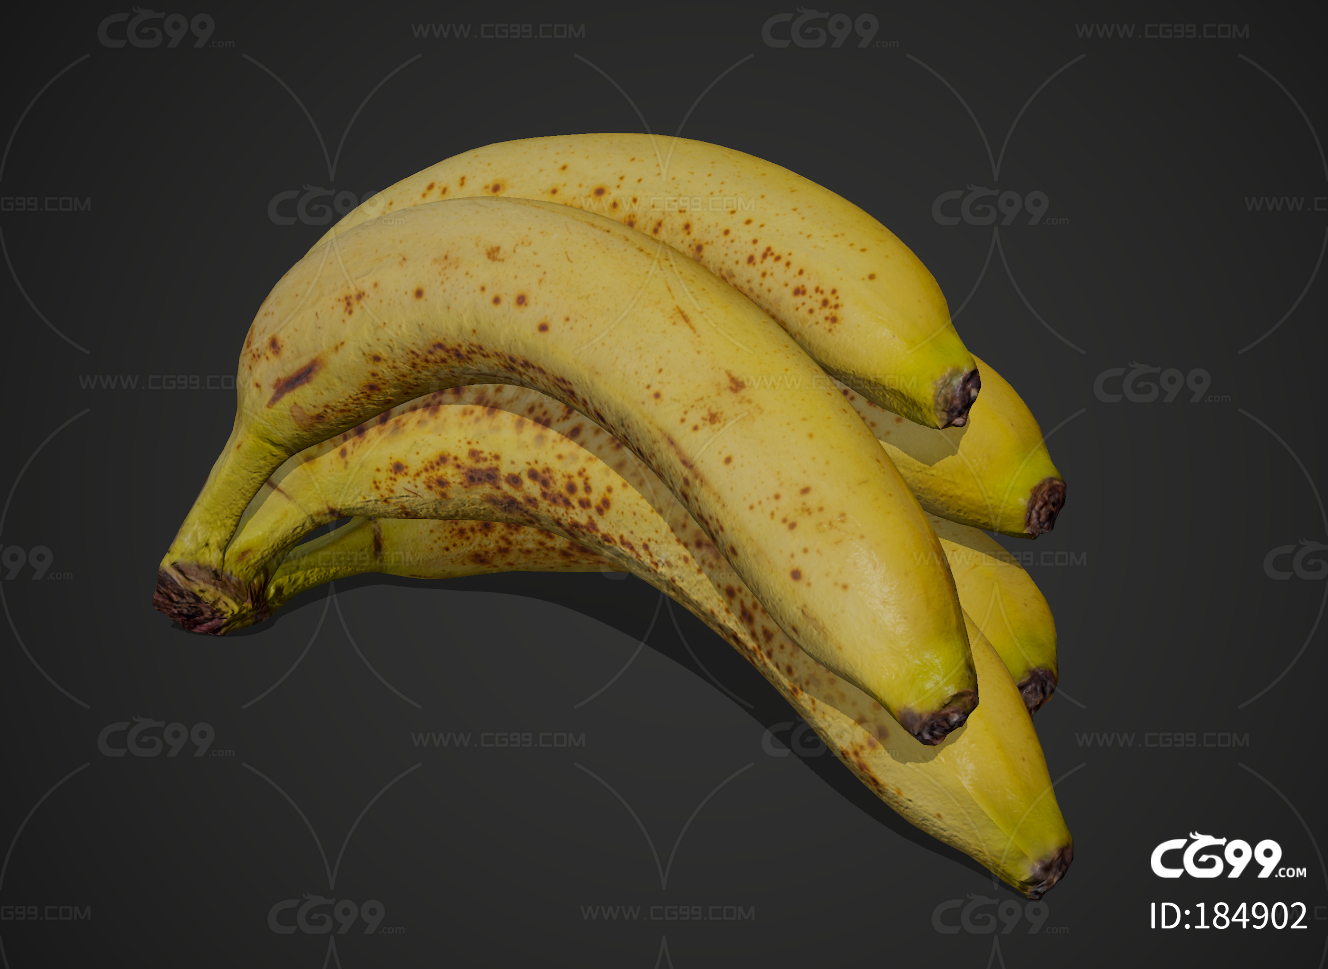 香蕉怎么保存 香蕉怎么放不烂不黑-优刊号